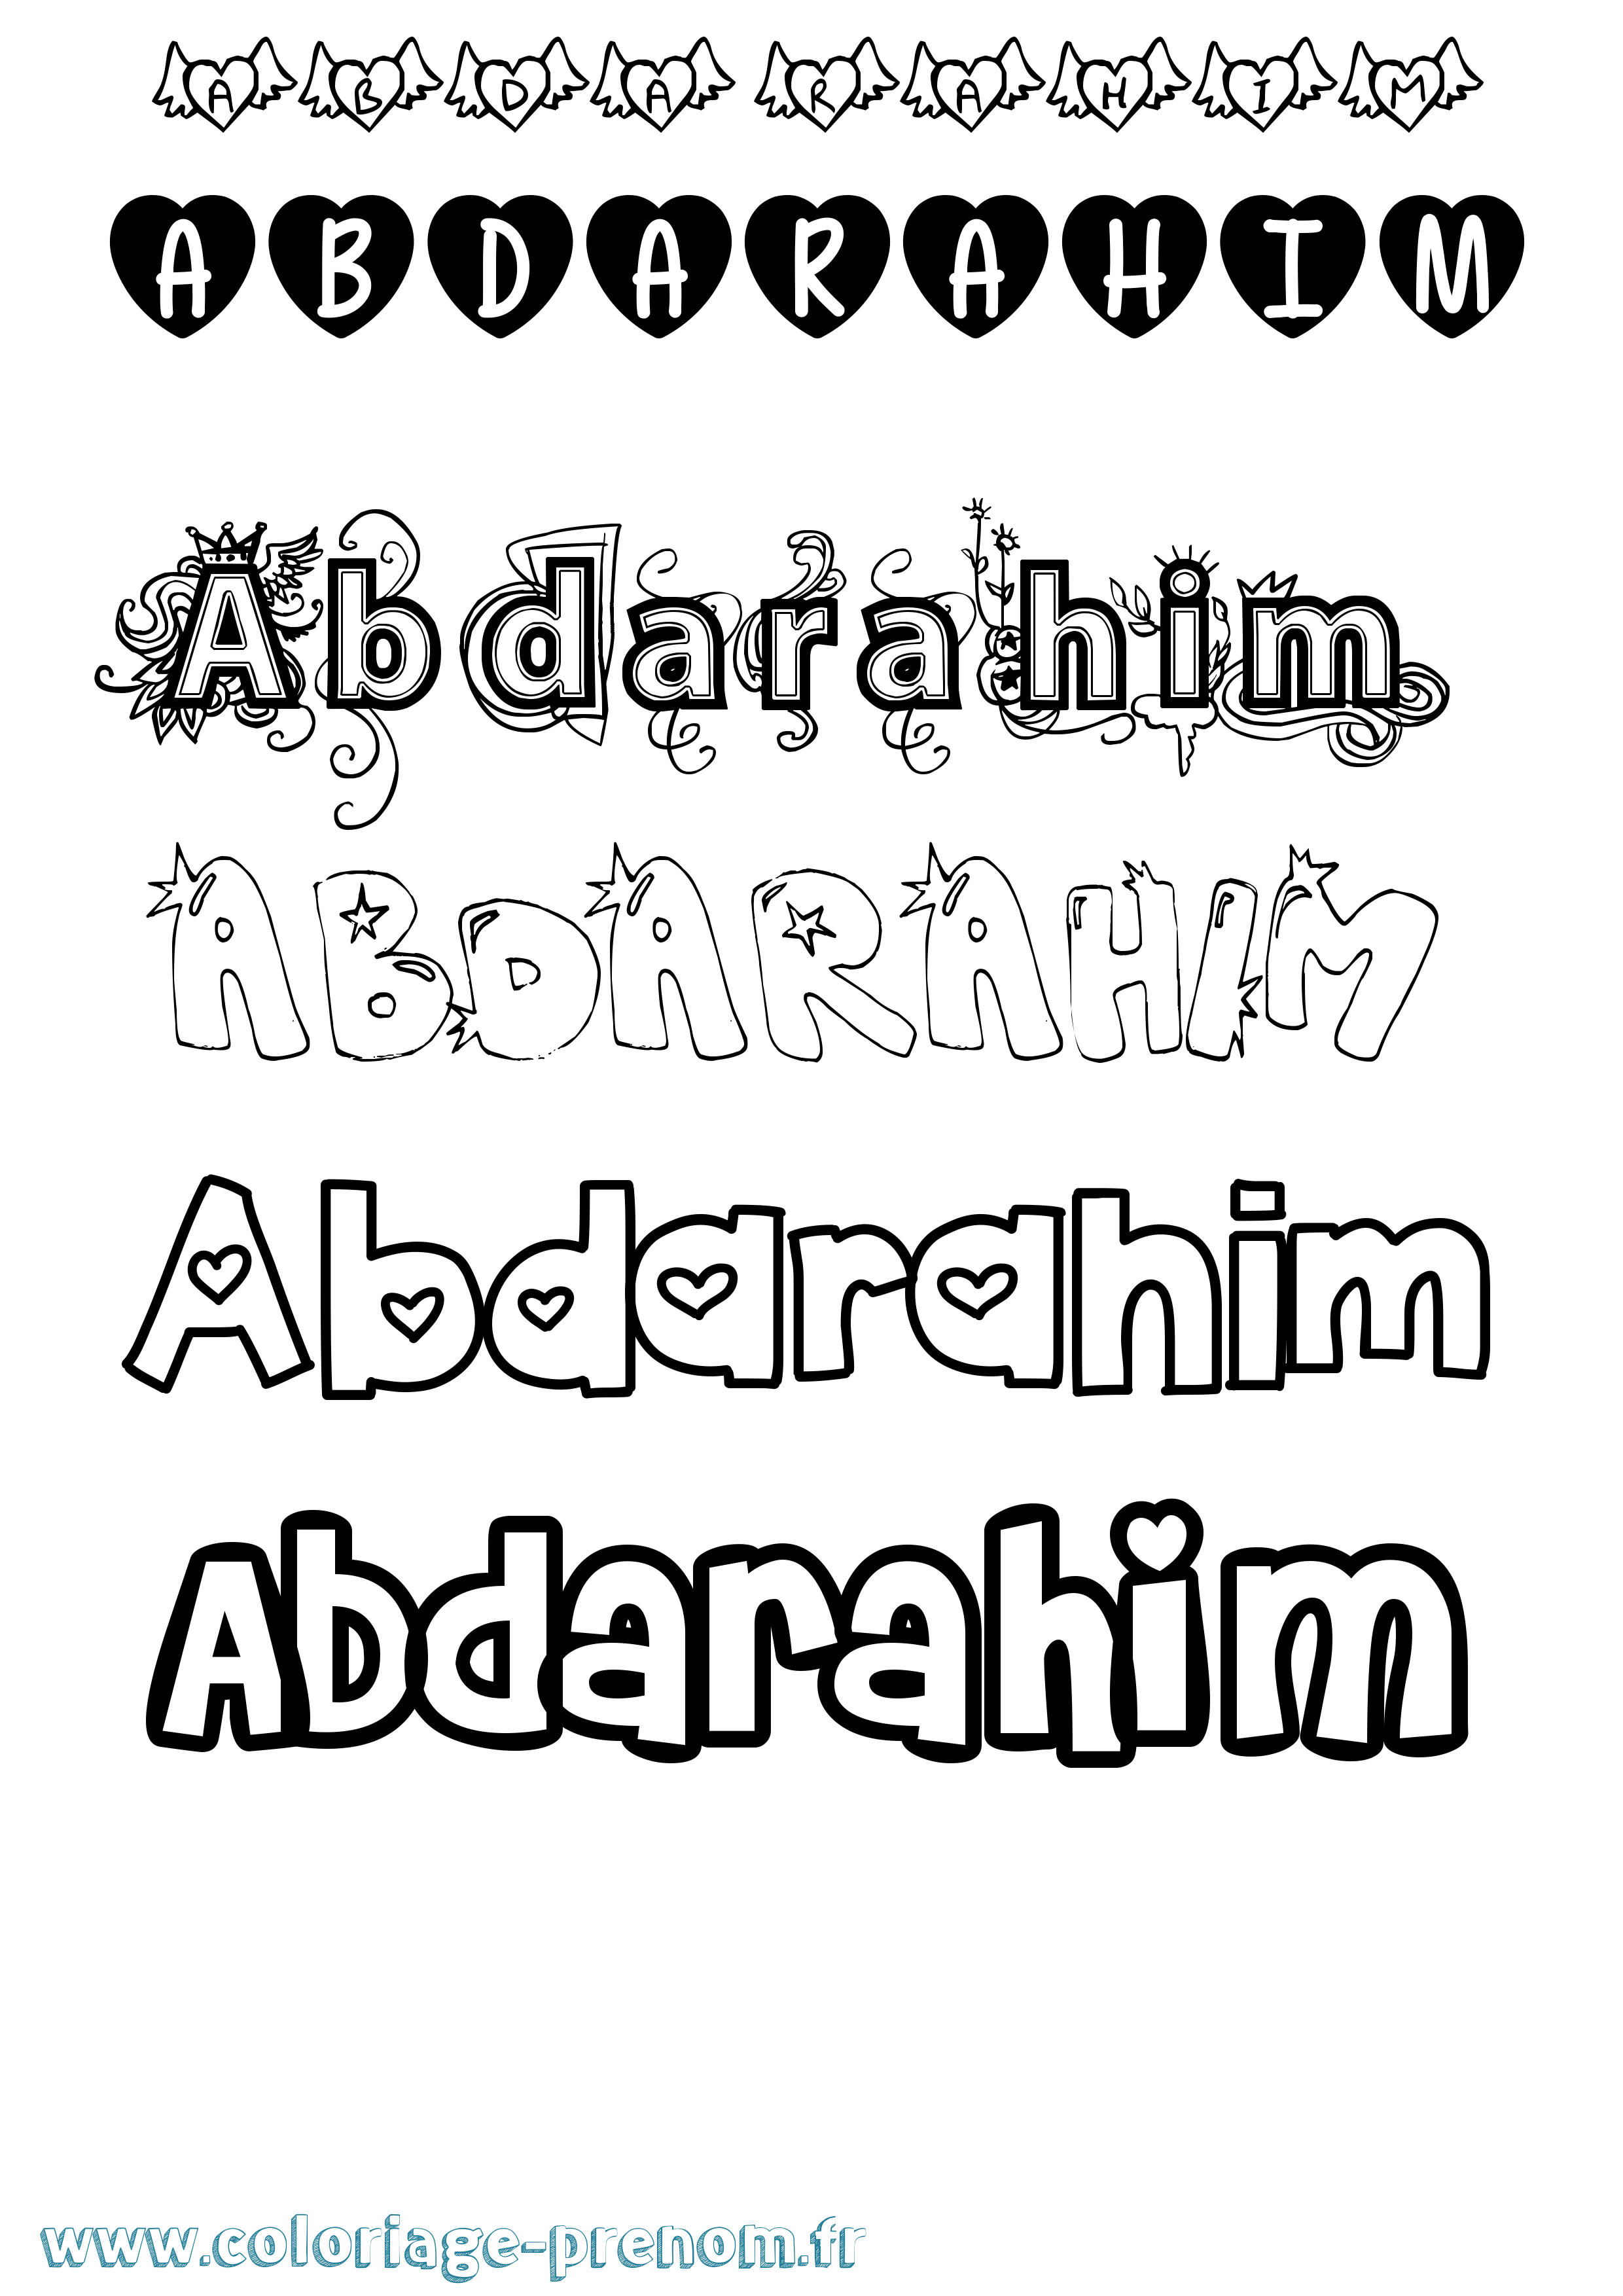 Coloriage prénom Abdarahim Girly